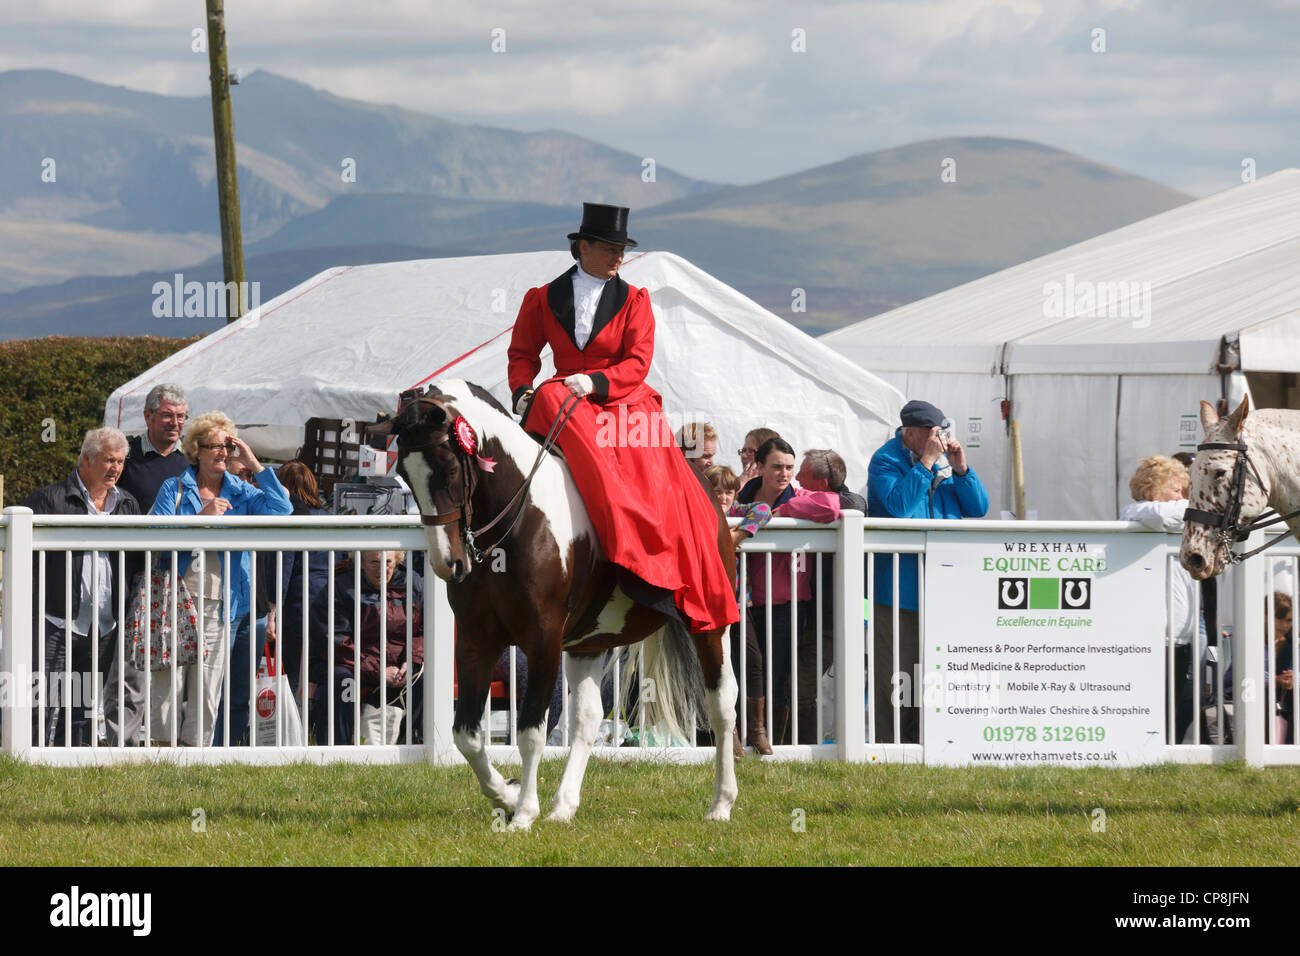 Singoli donna in sella ad un cavallo vincente sella laterale al paese di Anglesey in mostra il Mona showground con gli spettatori a guardare. Wales UK Gran Bretagna Foto Stock